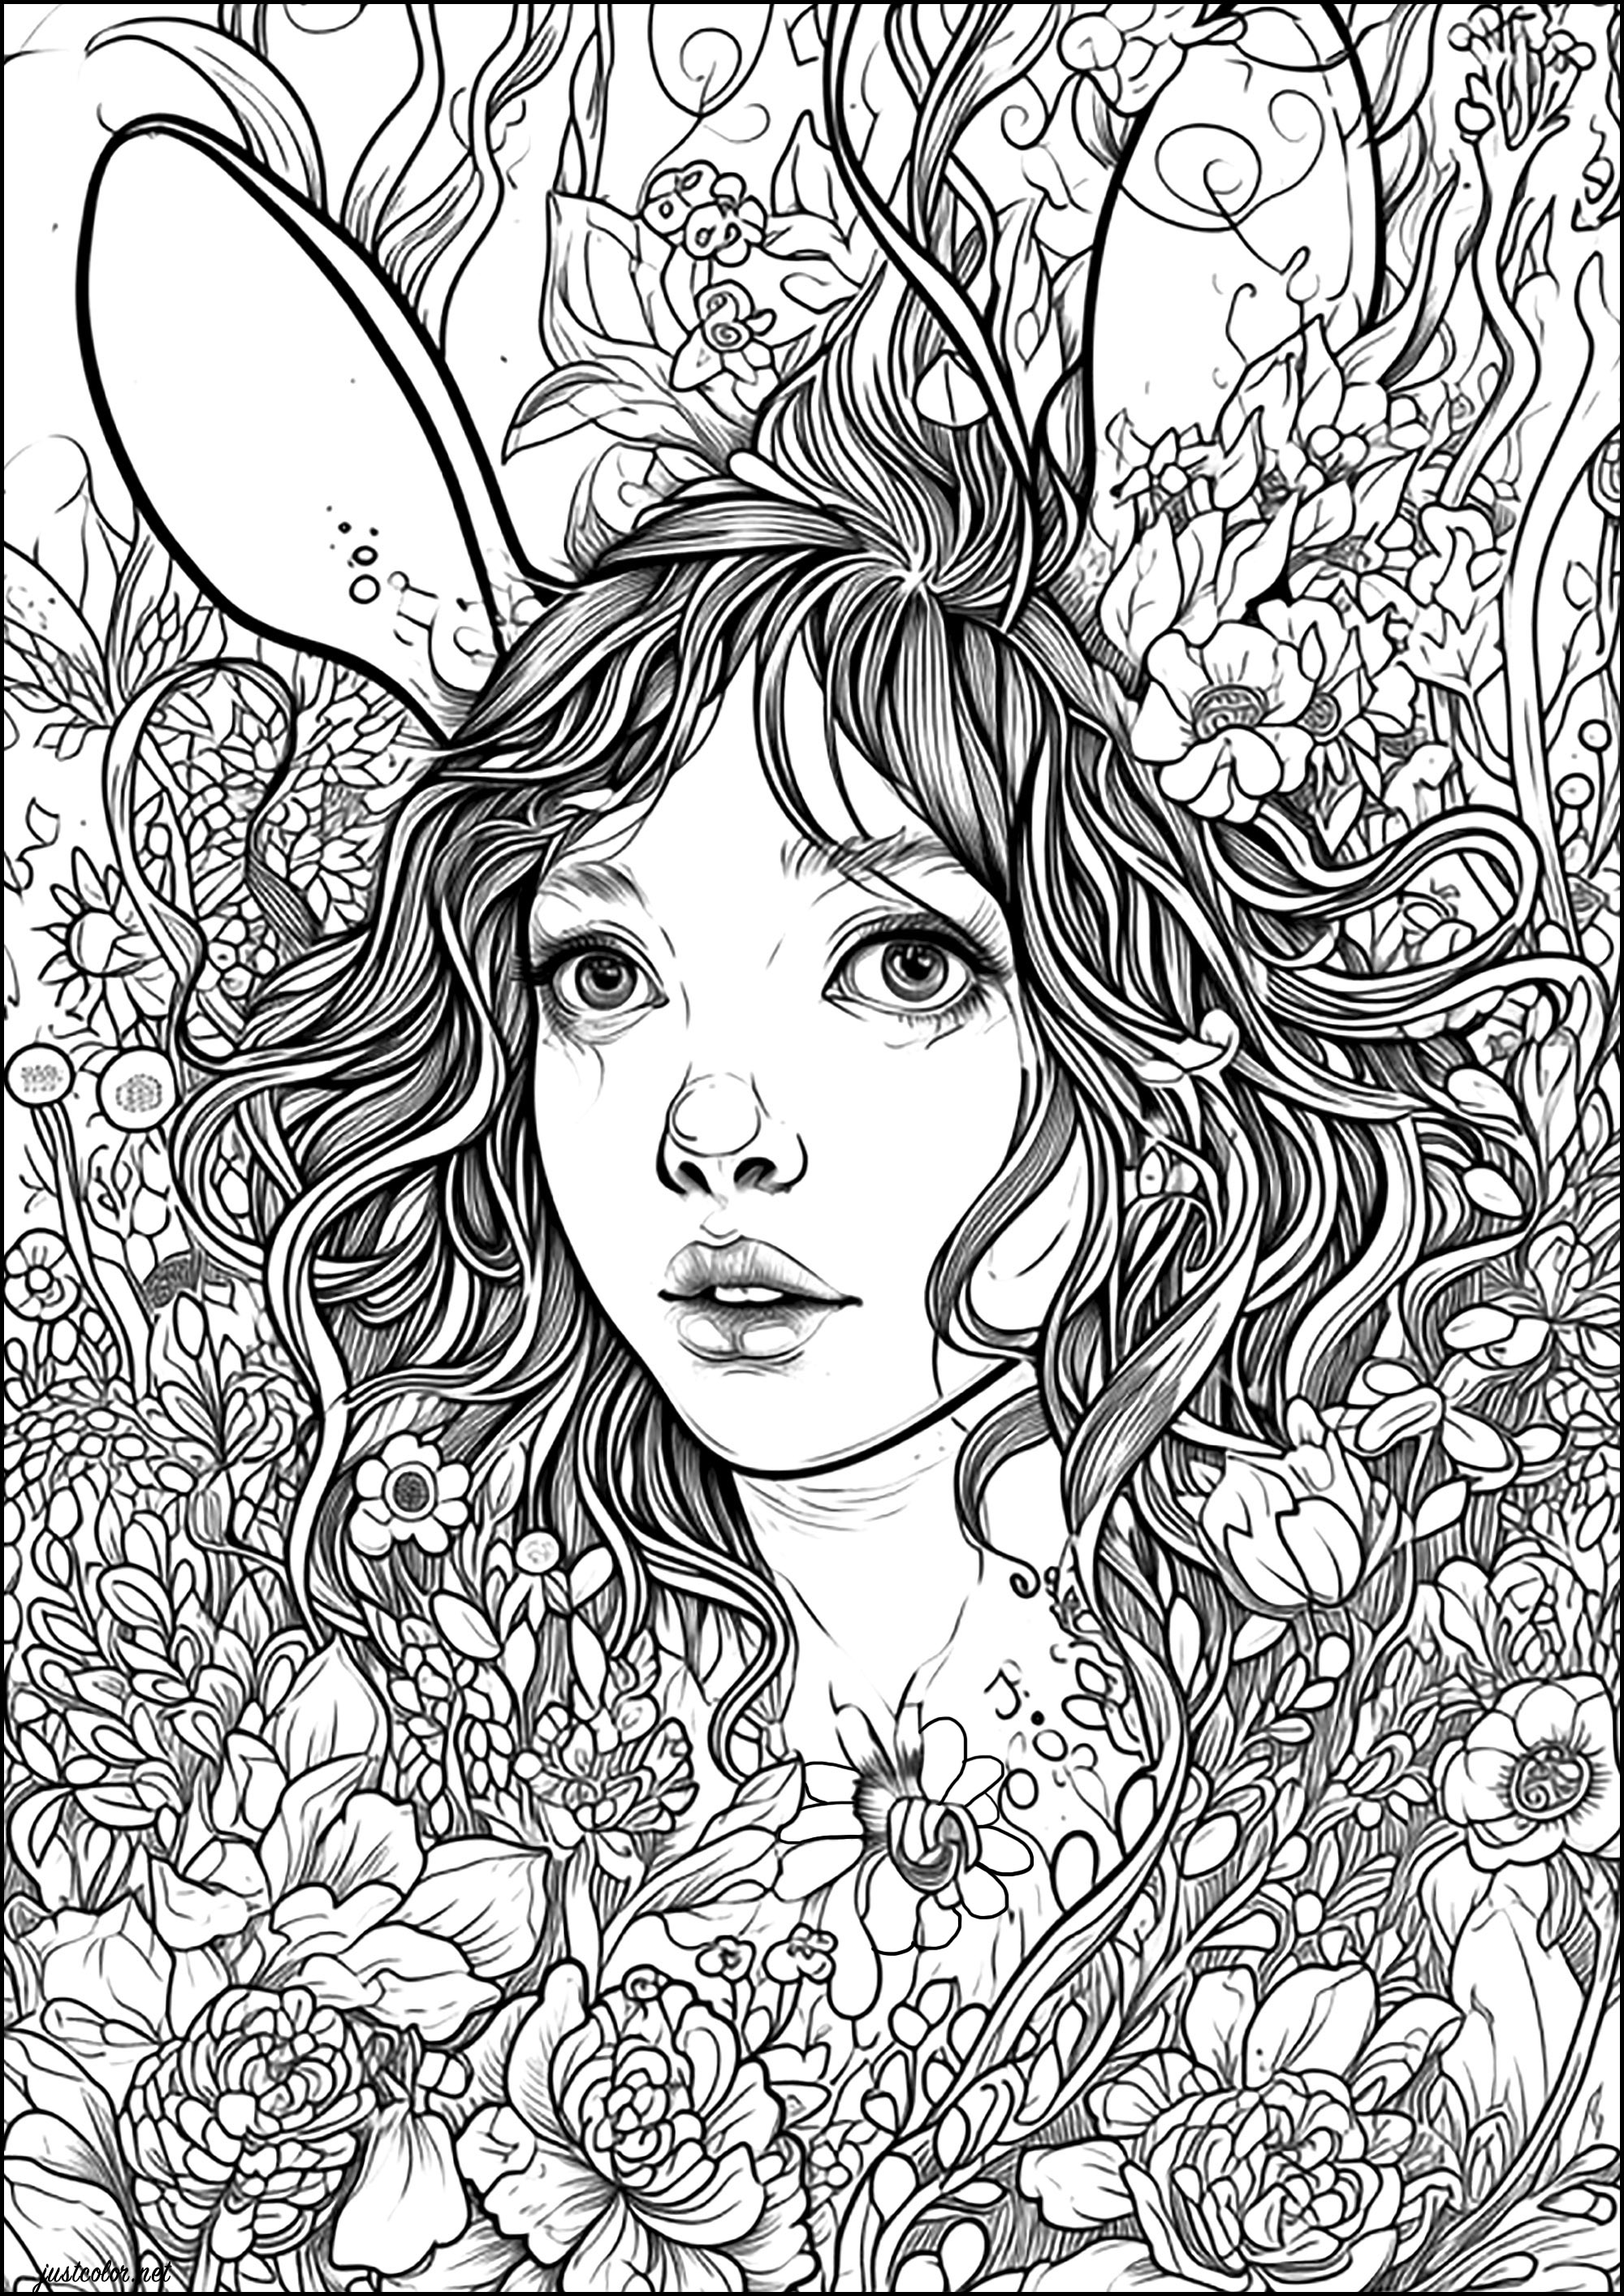 A mulher coelho. Um feitiço transforma esta jovem mulher num coelho... Ela esconde-se entre as flores, à espera que alguém a salve.